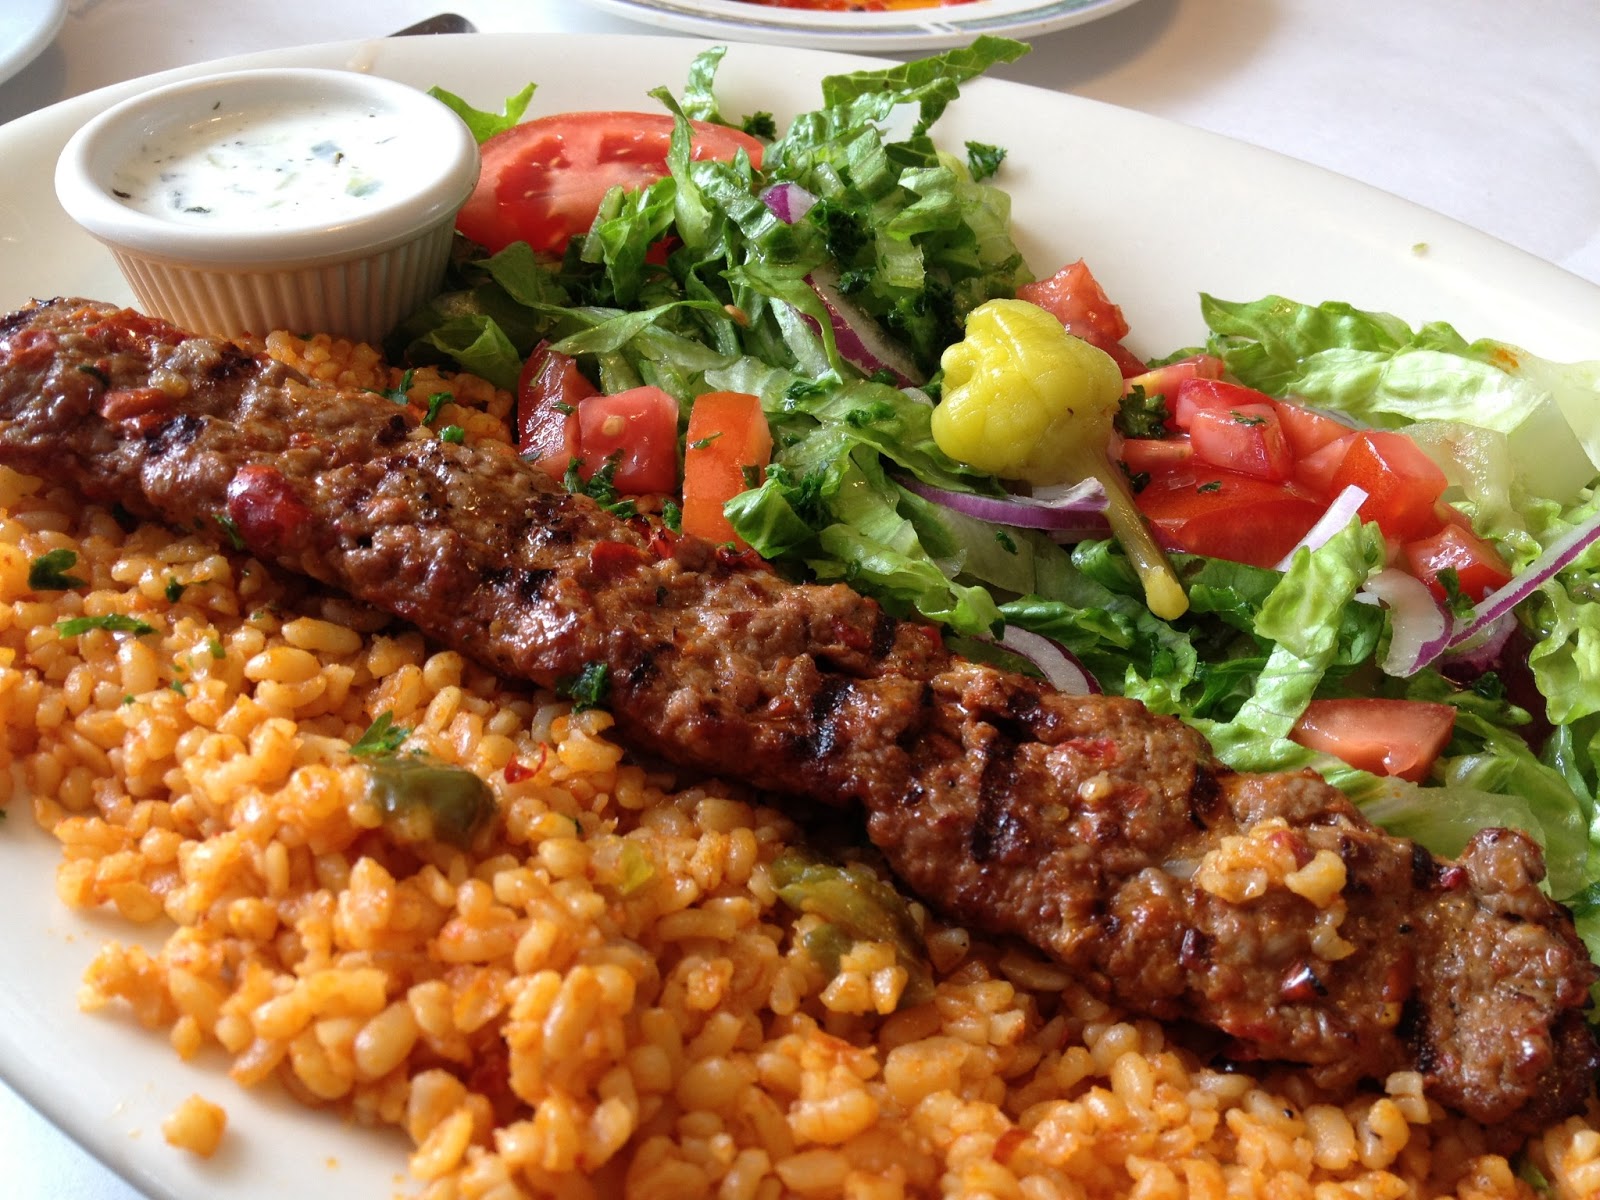 Turkish-Mediterranean Cuisine at Its Best - Restaurant Review - Well